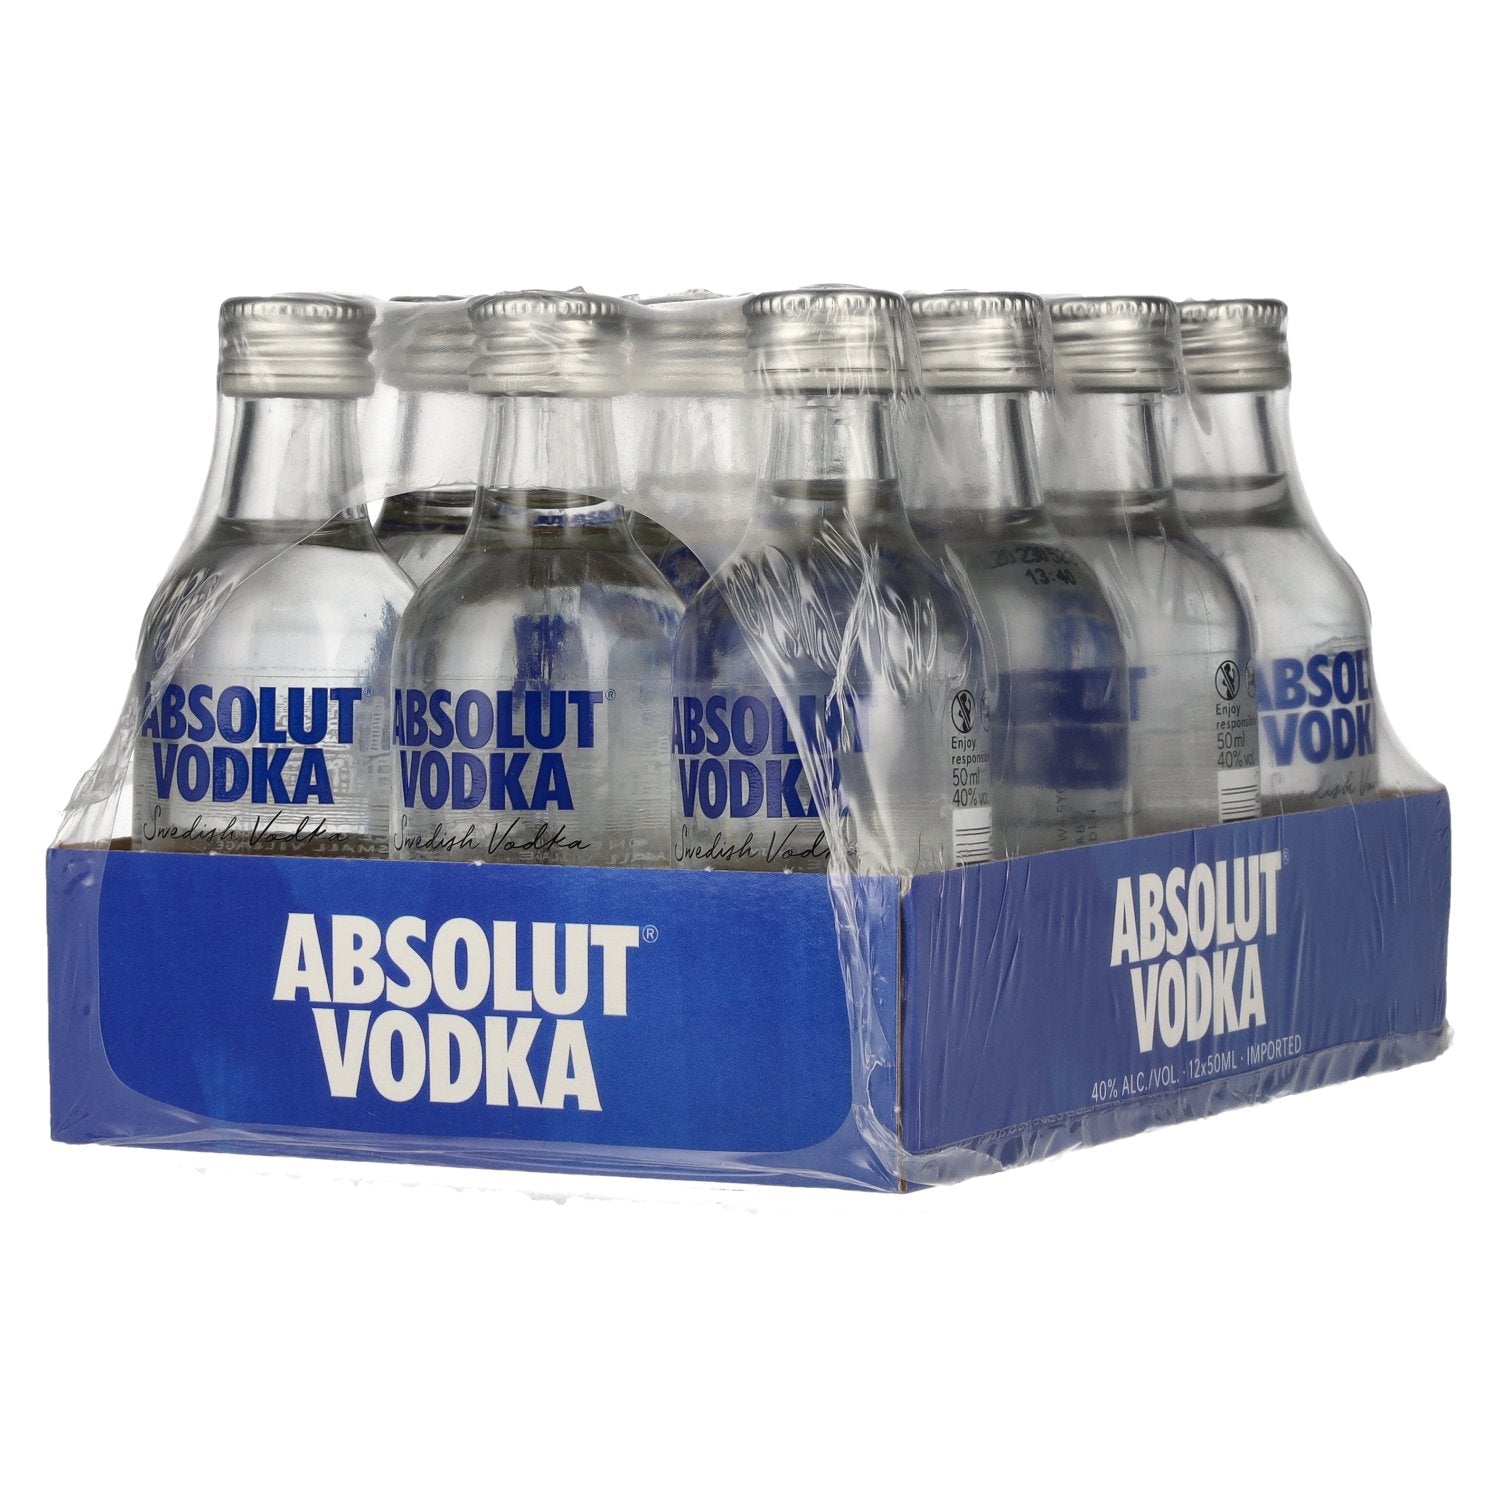 Absolut Vodka 40% Vol. 12x0,05l